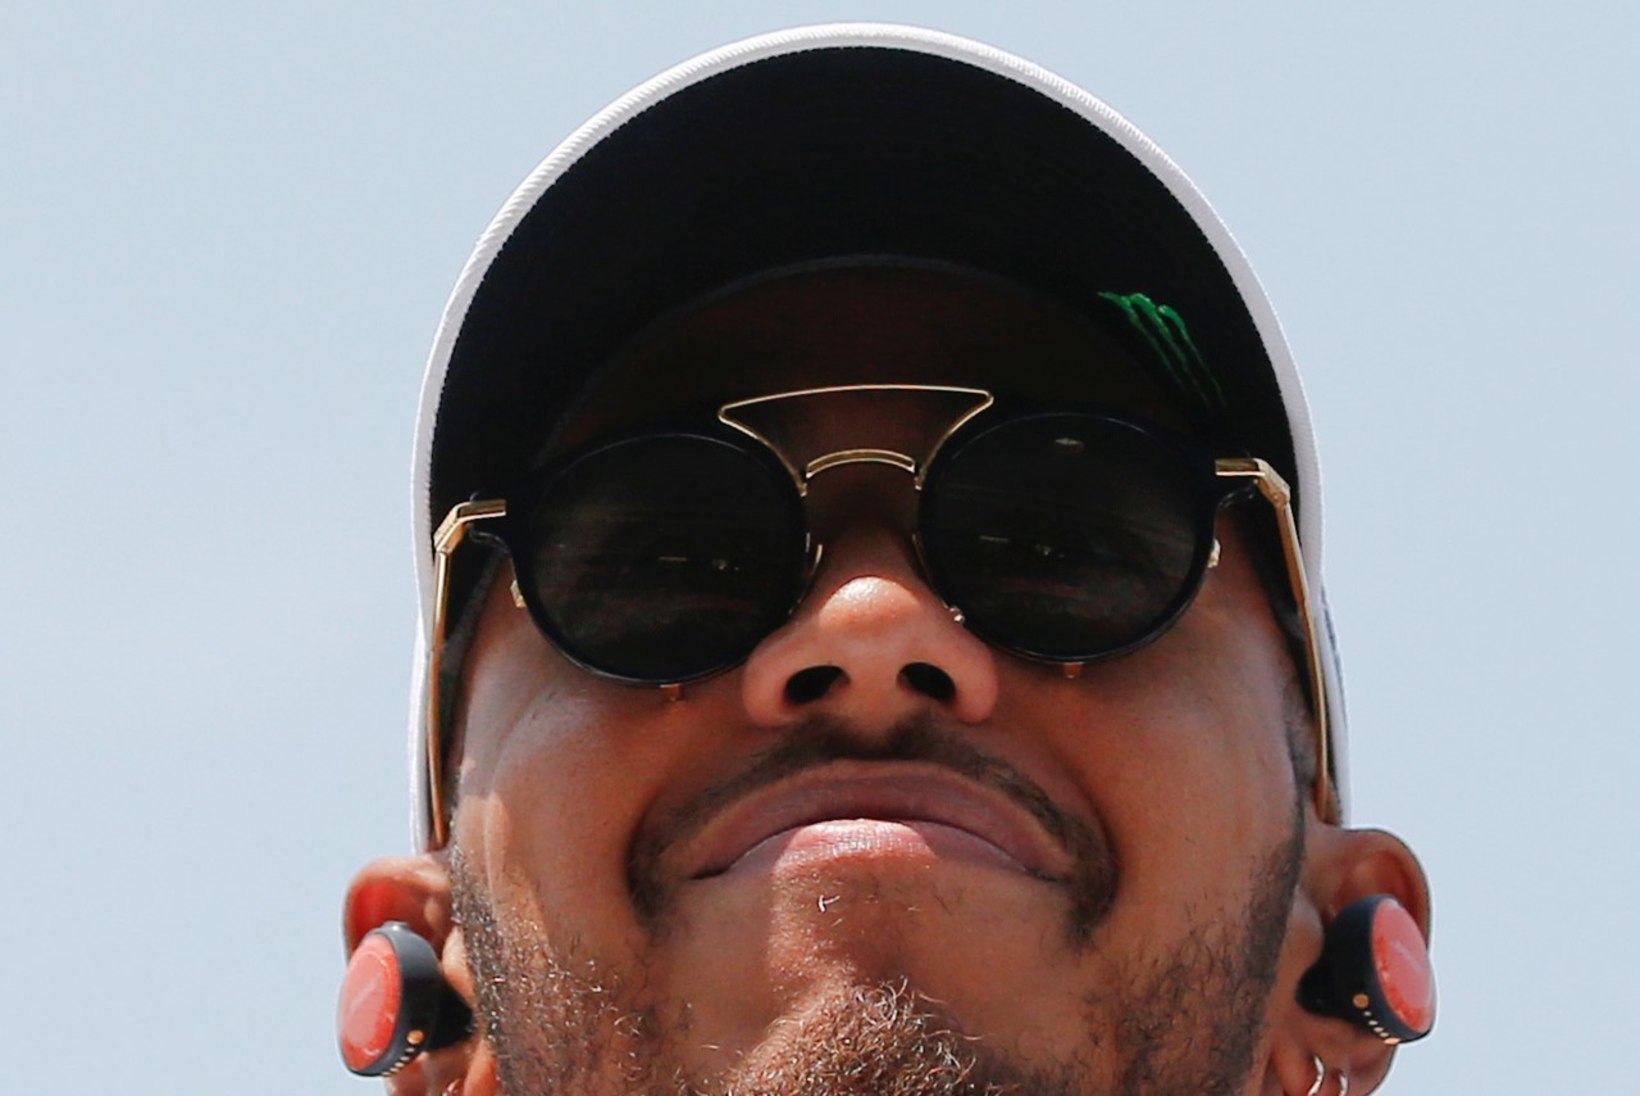 STATISTIKA: Lewis Hamilton püstitas vägeva F1 rekordi